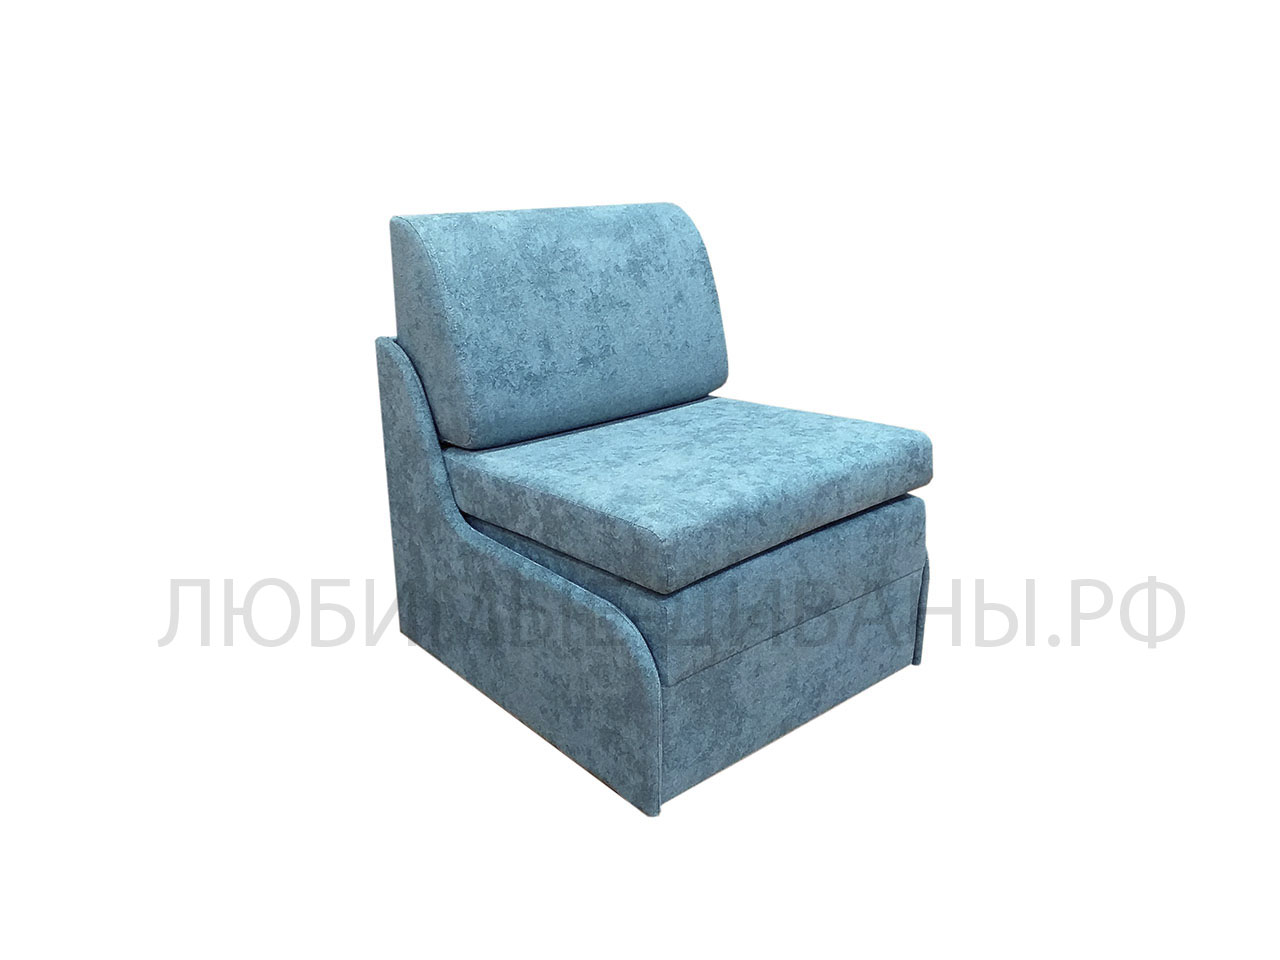 Компактное кресло кровать Танго-4 Д-75 без подлокотников с высоким сидением 48 см и глубиной 80 см. Габаритный размер 80 х 80 см. Спальное место 75 х 200 см.